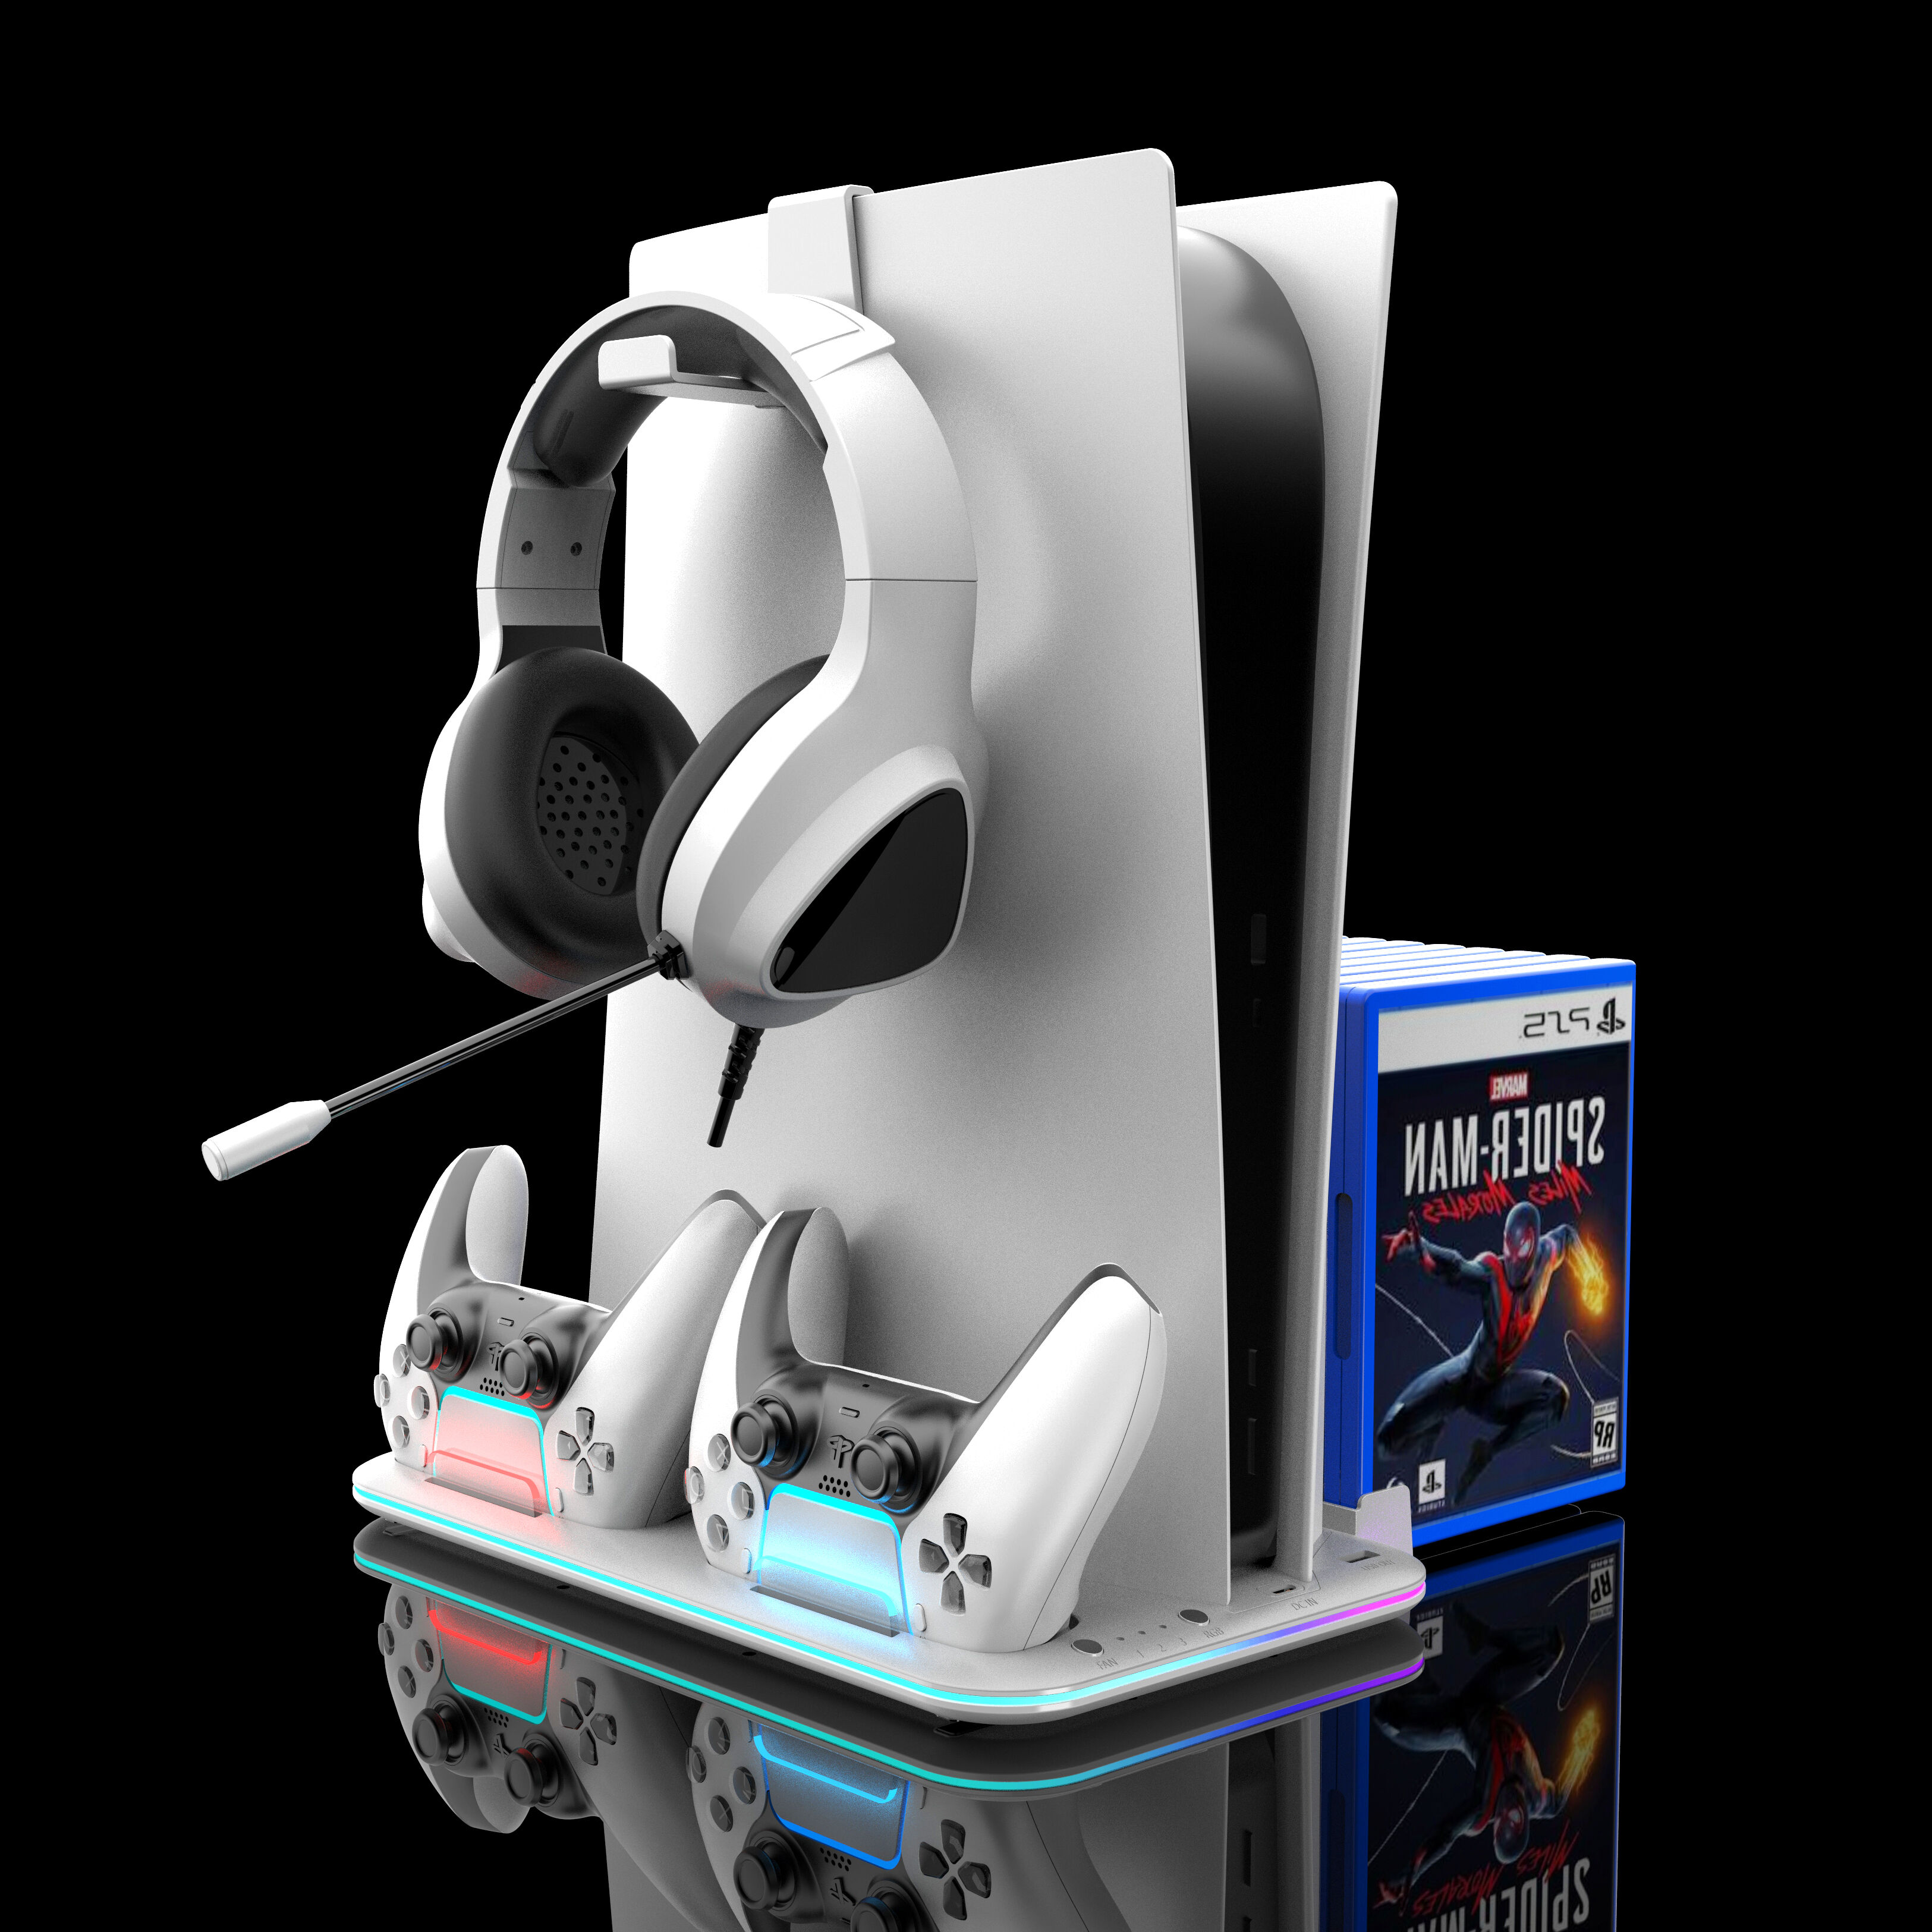 Support vertical mince PS5 avec ventilateur de refroidissement et station  de chargement à double contrôleur Console Playstation 5 Slim compatible  avec support casque